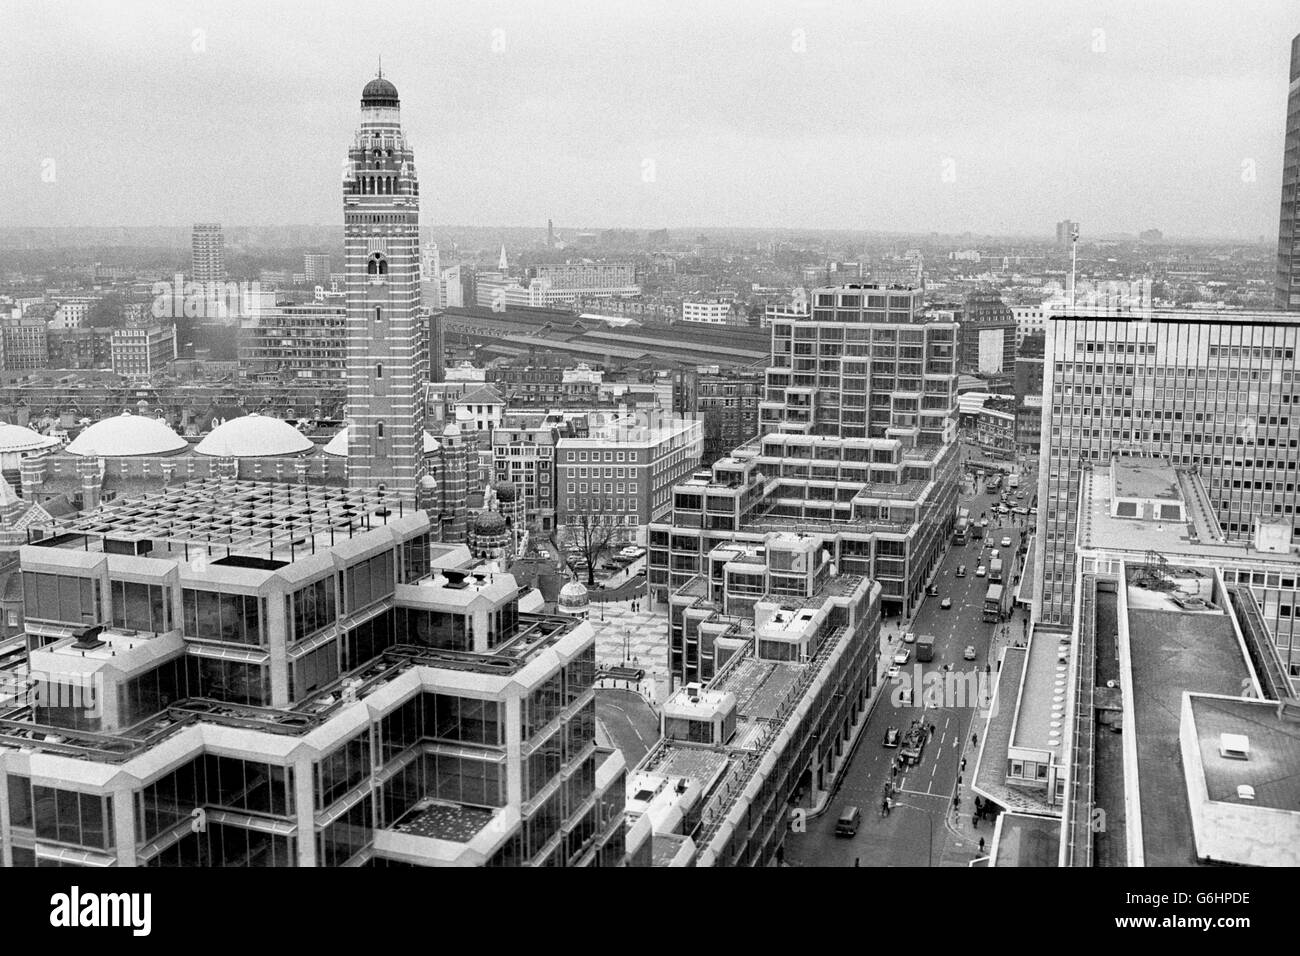 Une image prise du 20e étage de l'hôtel de ville de Westminster, rue Victoria. L'imposante tour de la cathédrale de Westminster est visible, ainsi que la gare Victoria (centre, arrière-plan). Banque D'Images